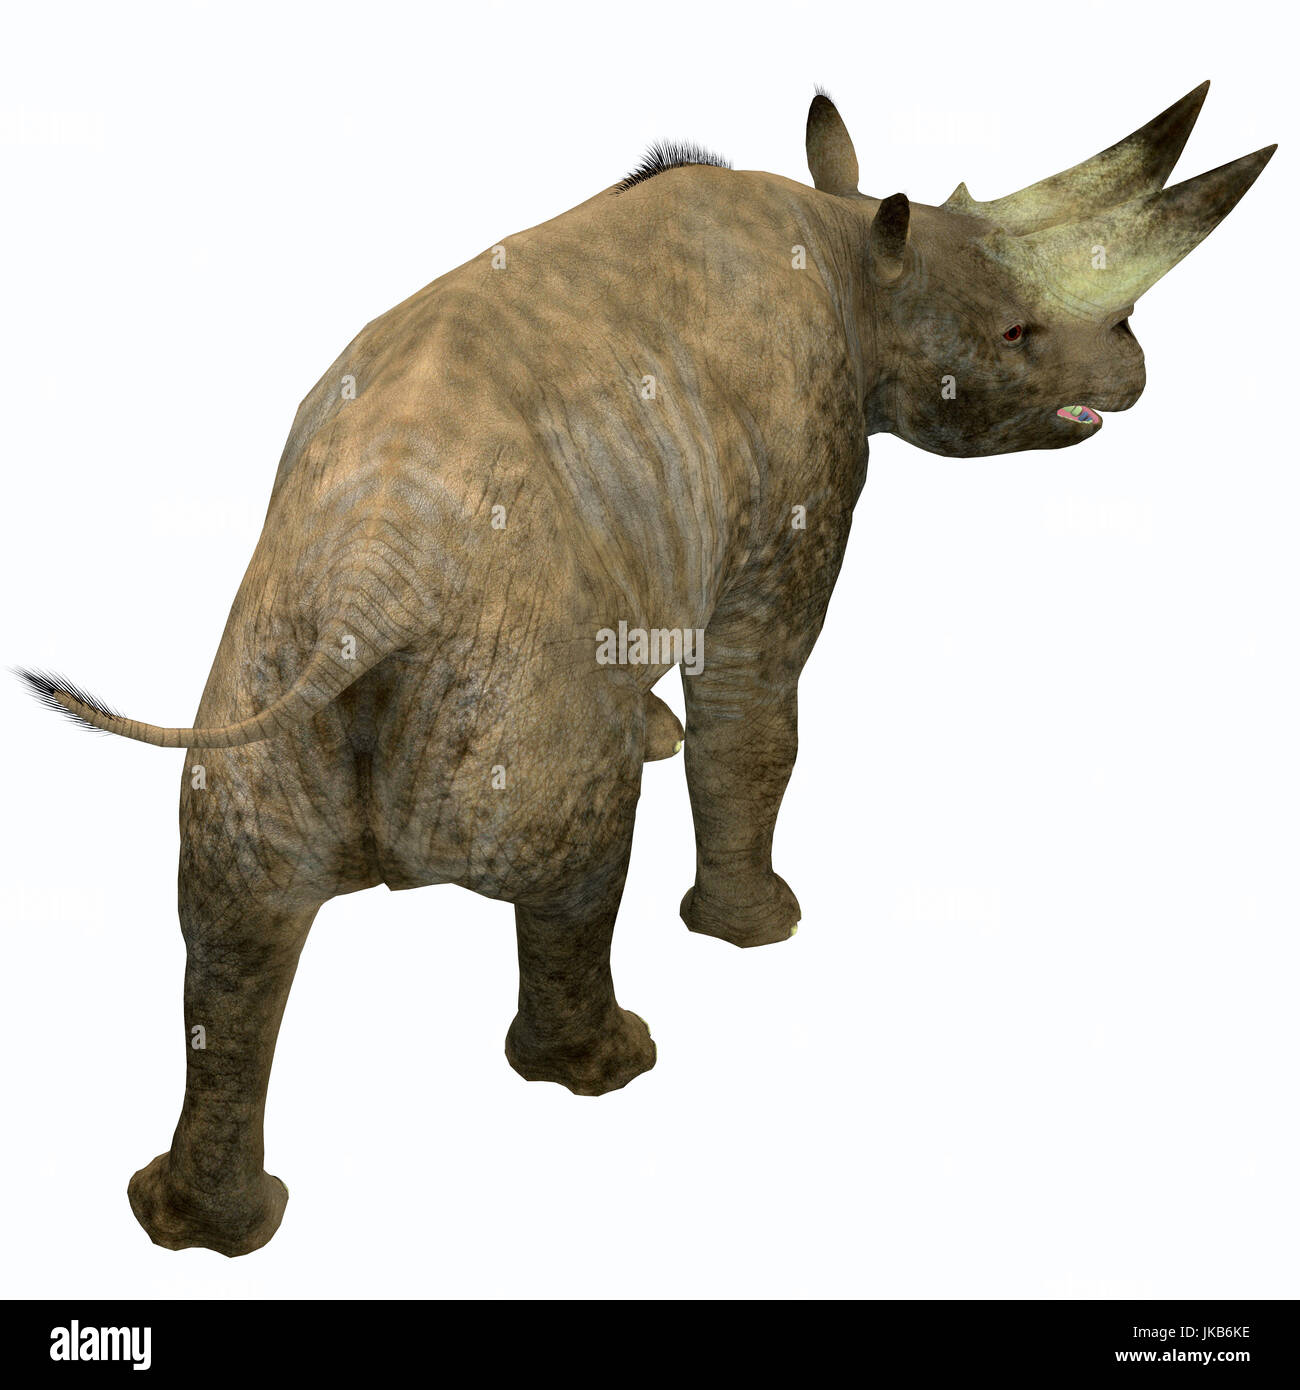 These war ein Pflanzenfresser Nashorn-ähnliches Säugetier, das im frühen Oligozän in Afrika gelebt. Stockfoto